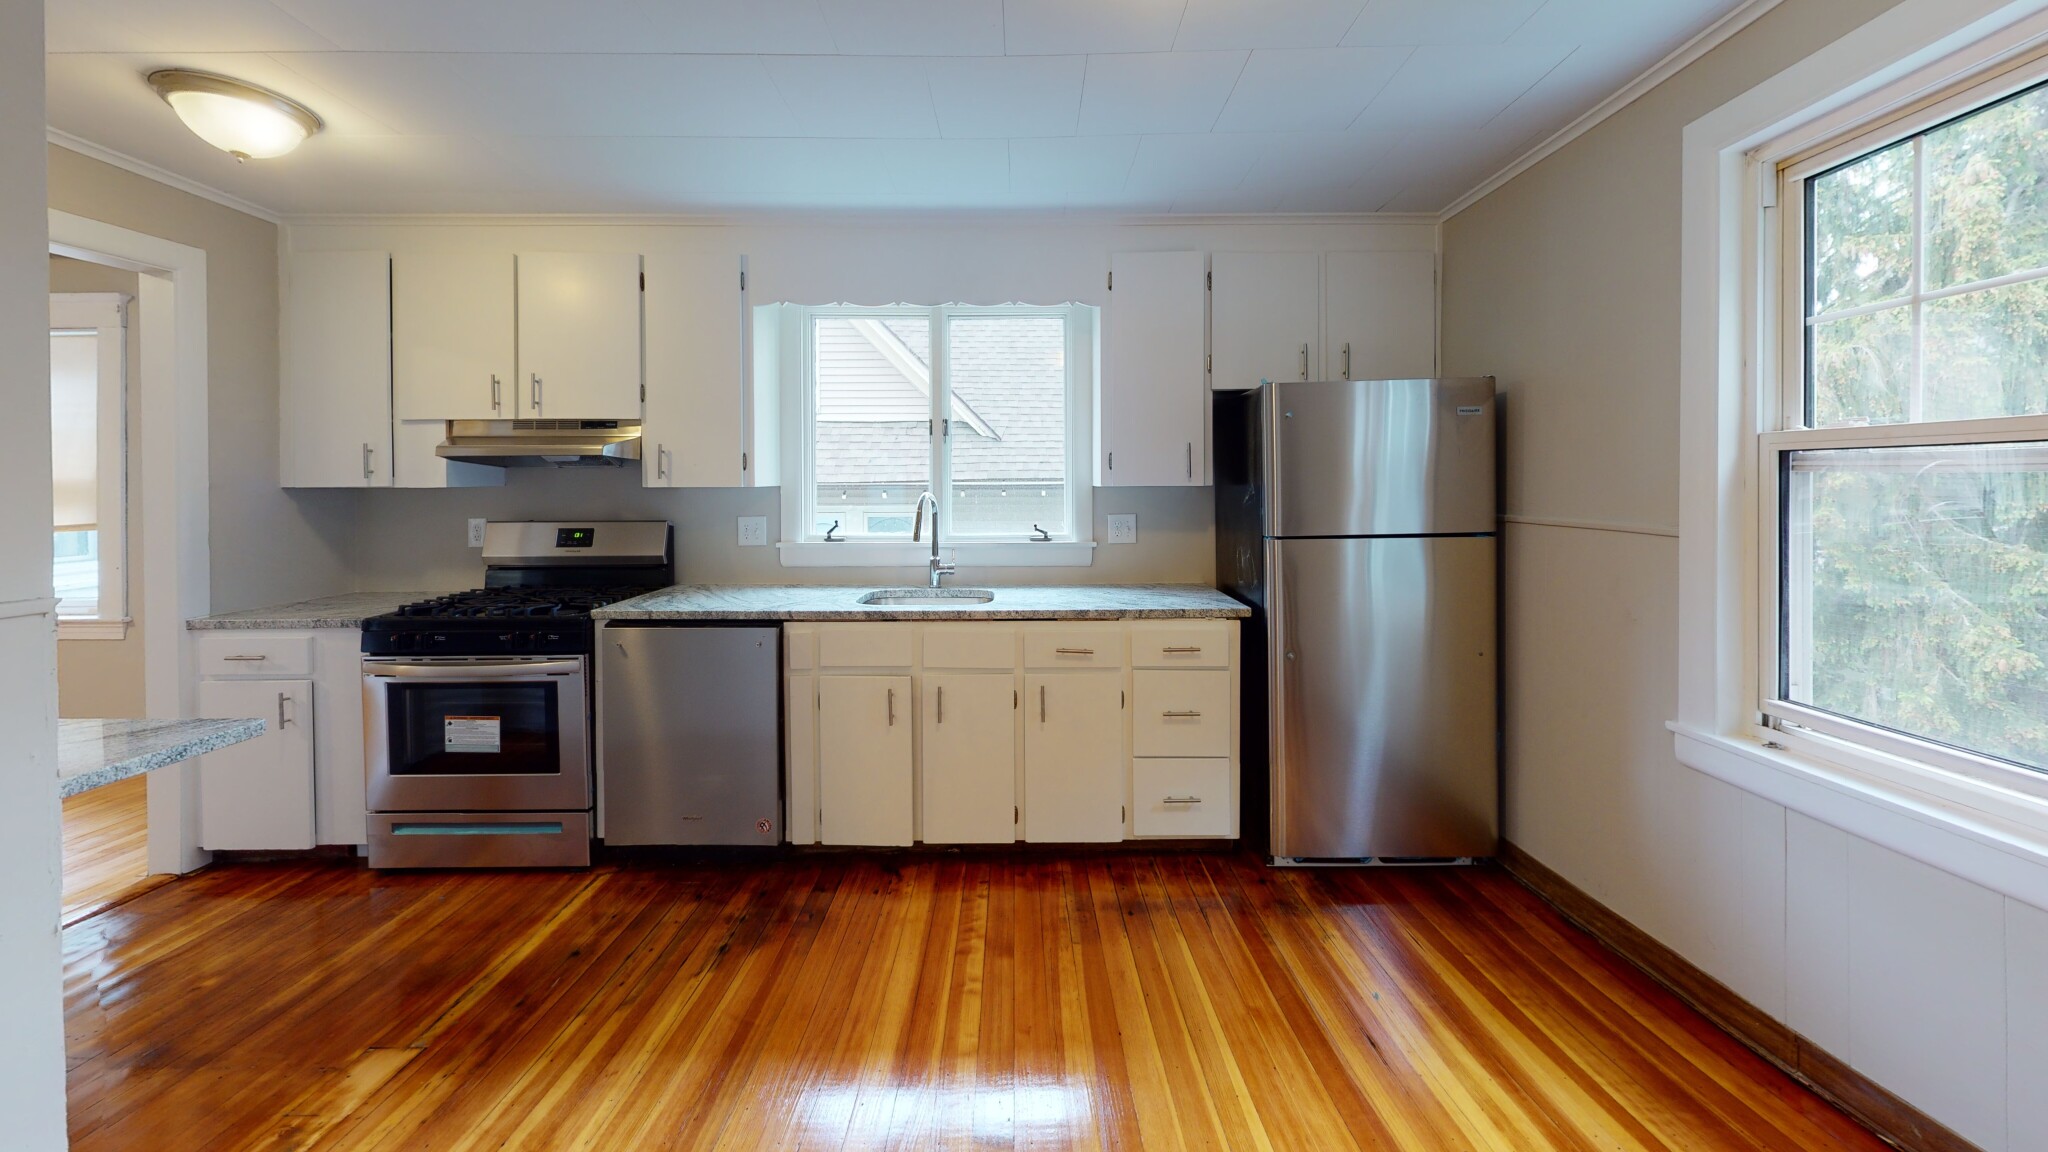 Photos of apartment on Strathmore Rd.,Boston MA 02135